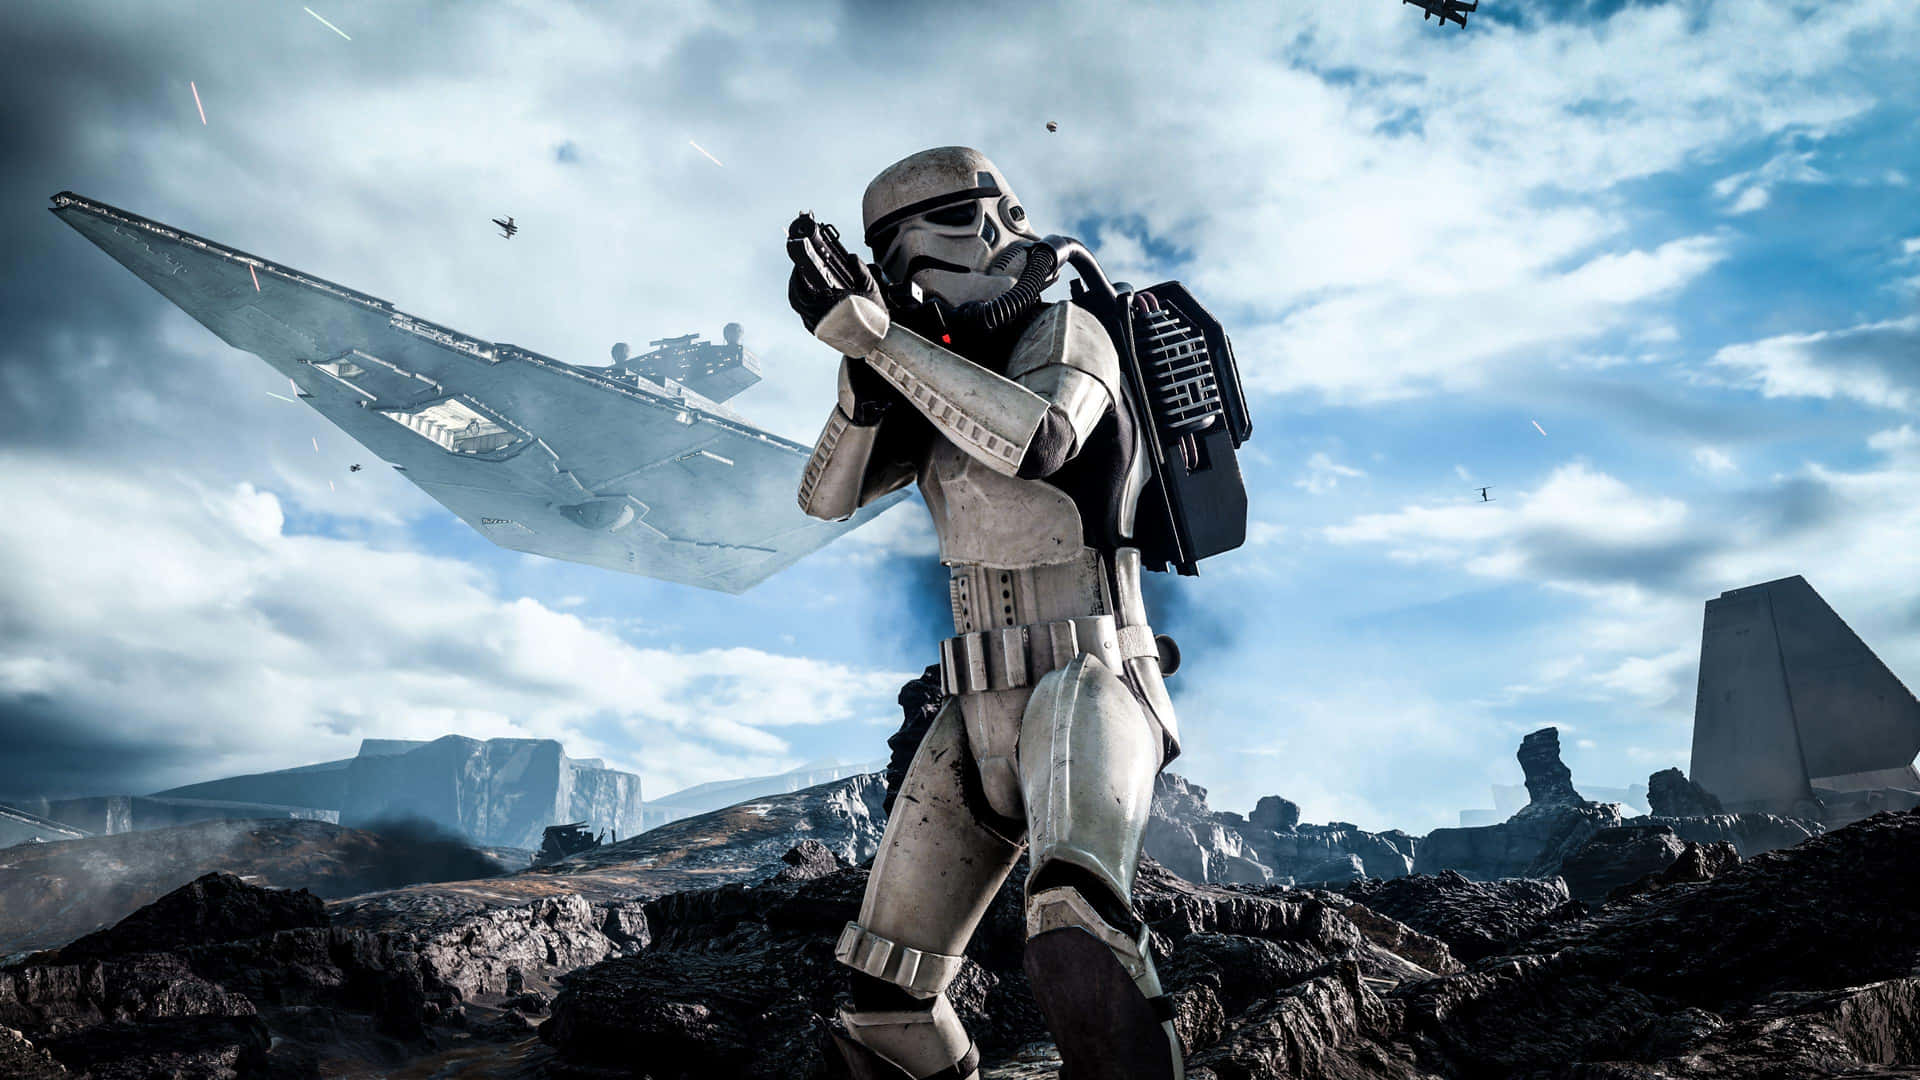 Star Wars Stormtrooper Holding Gun Background